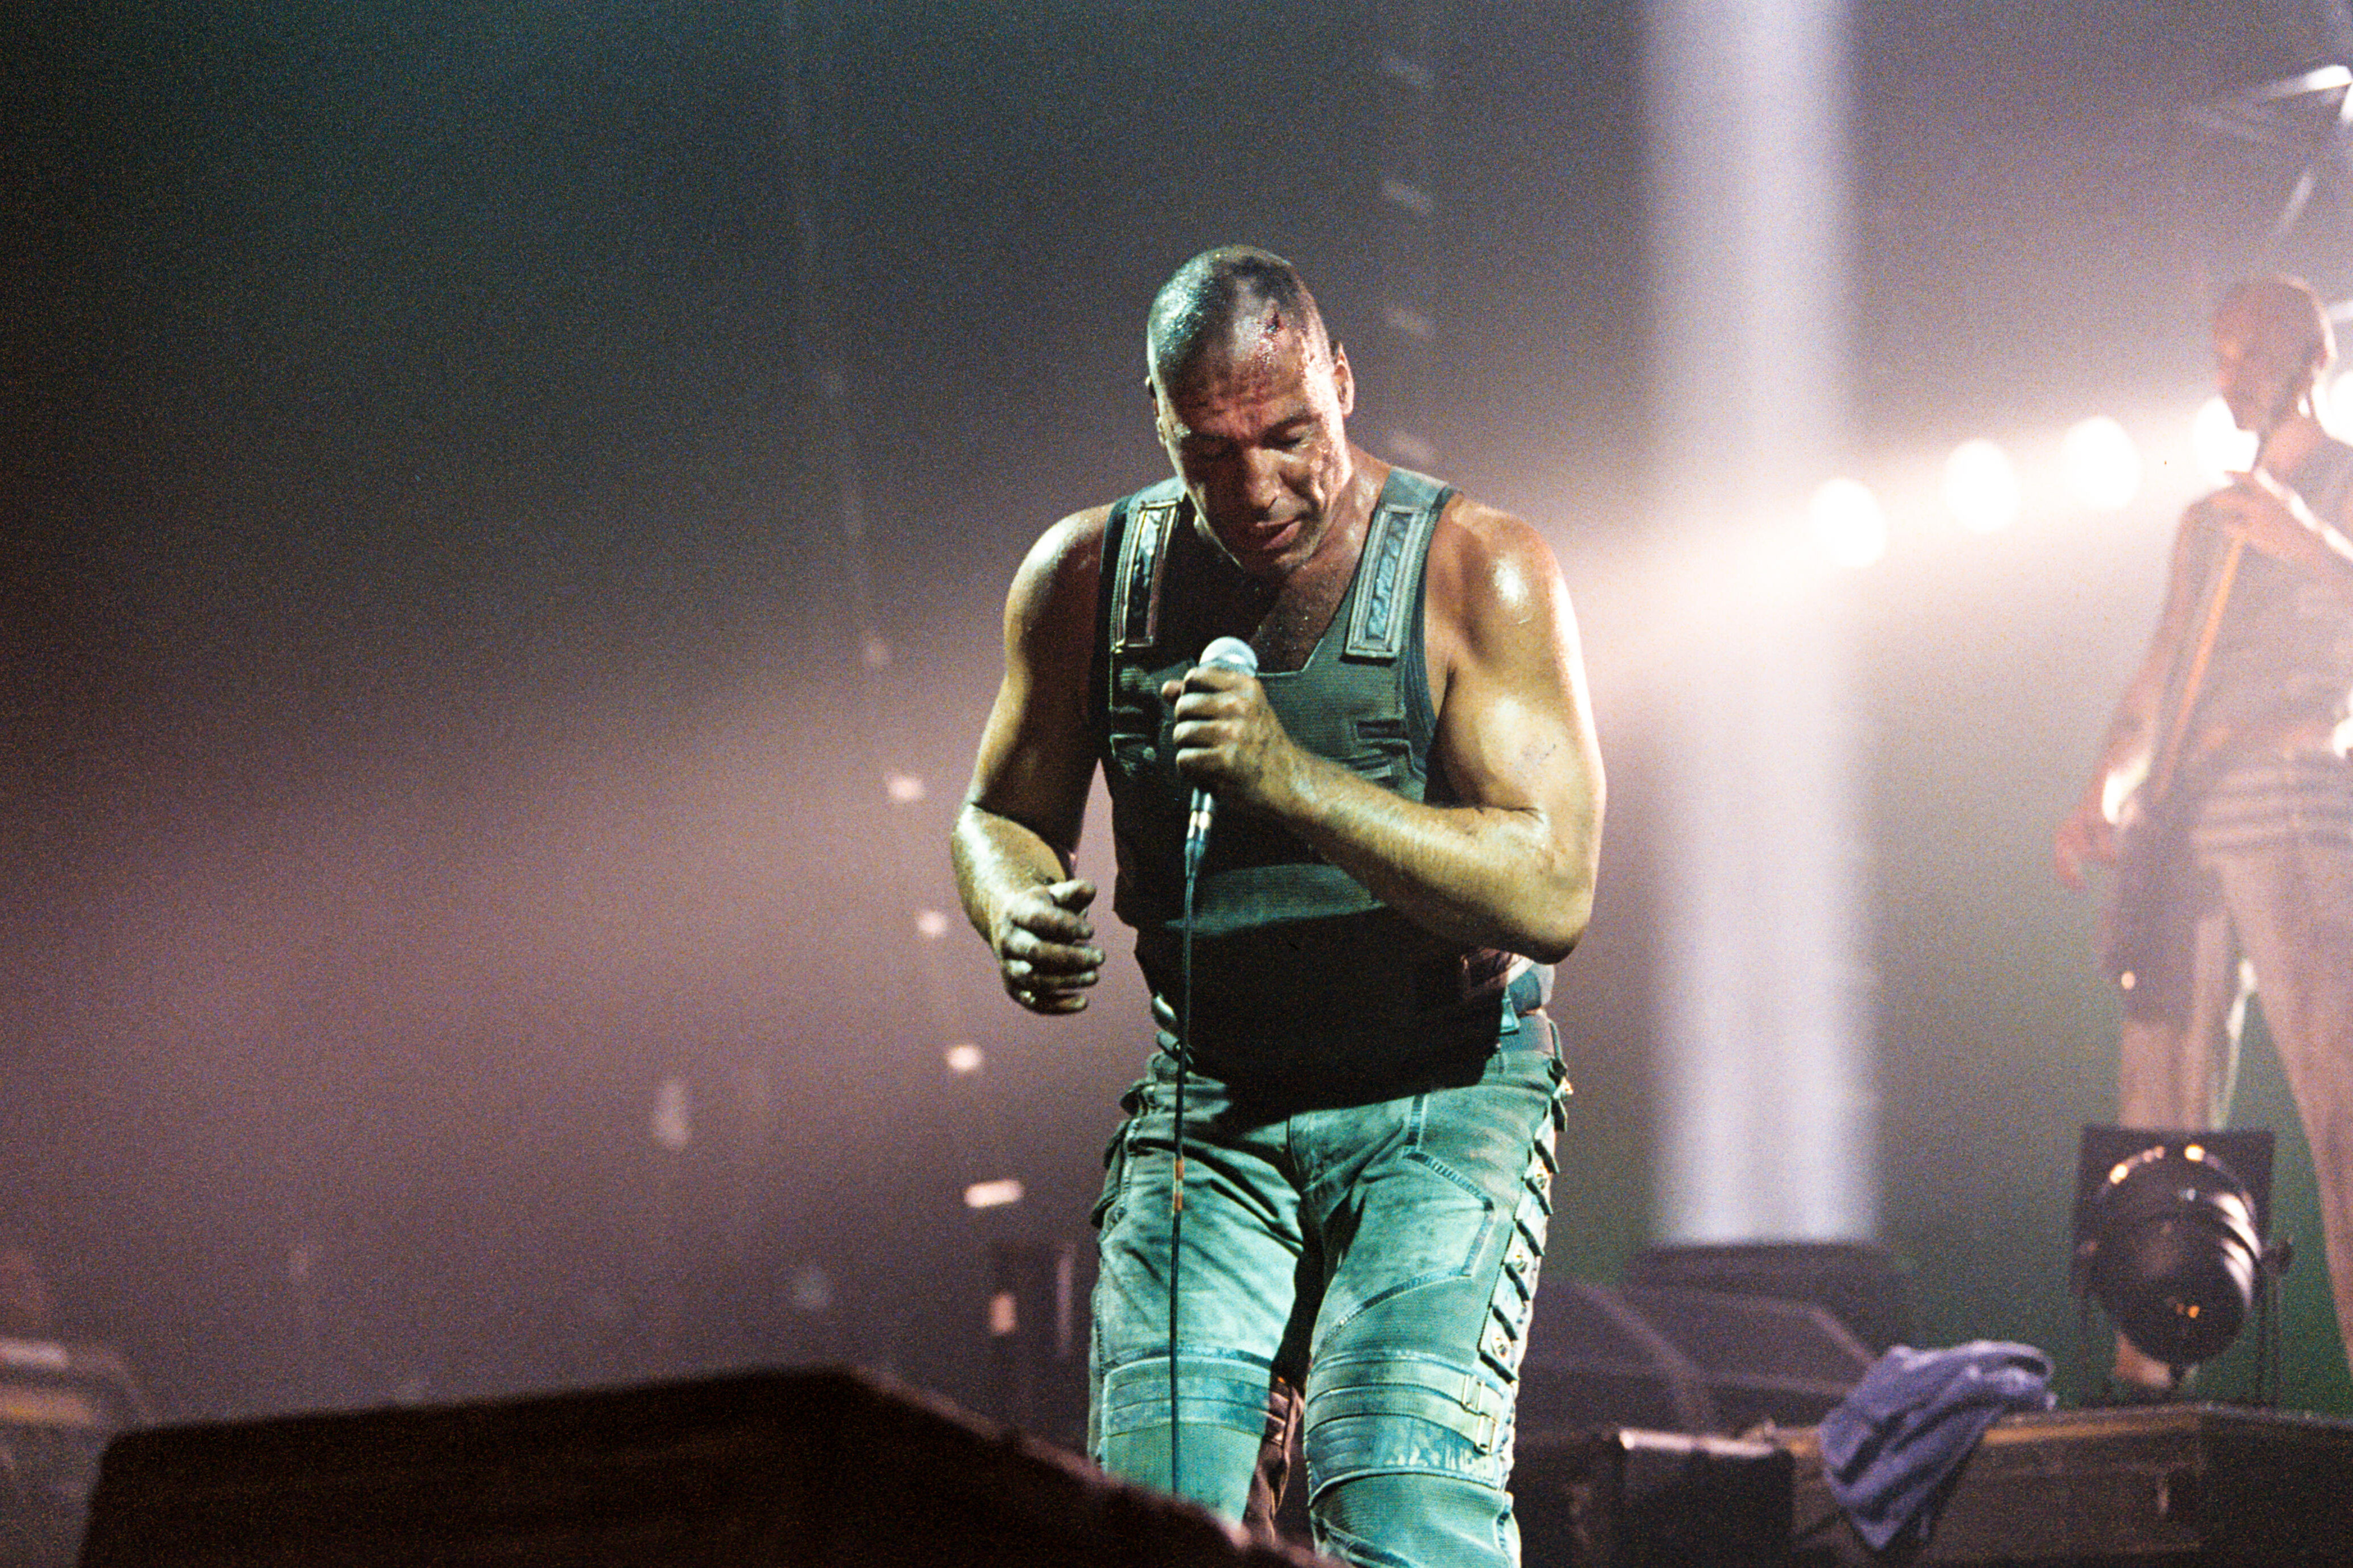 Группа Rammstein провела концерт в Берлине, несмотря на протесты - укатлант.рф | Новости